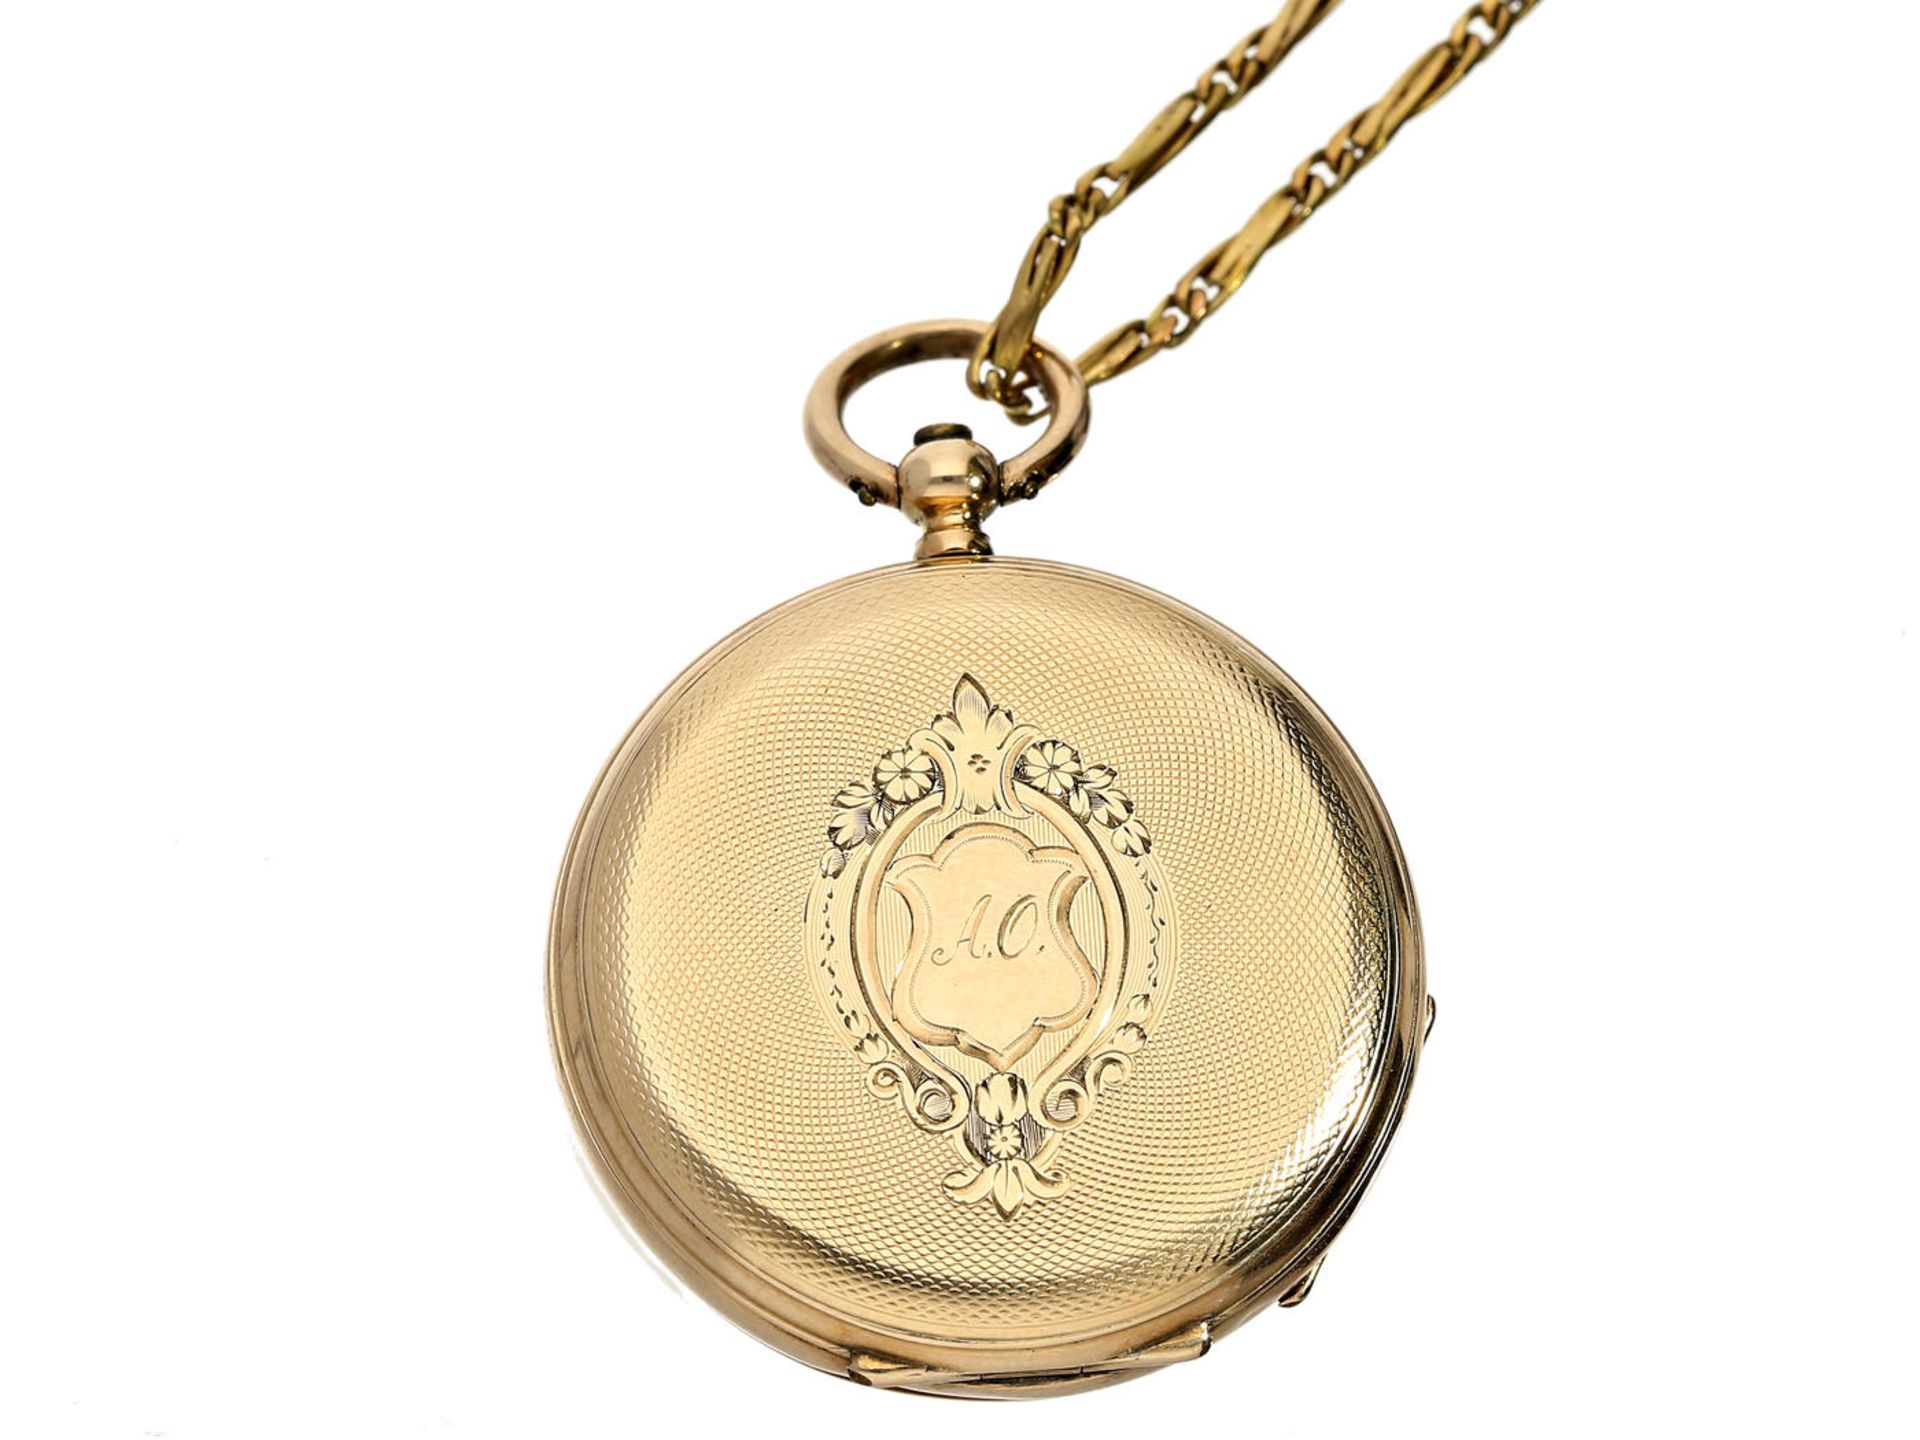 Taschenuhr/Anhängeuhr: feine Damenuhr mit dazugehöriger goldener Uhrenkette, signiert J & C.B - Bild 3 aus 3